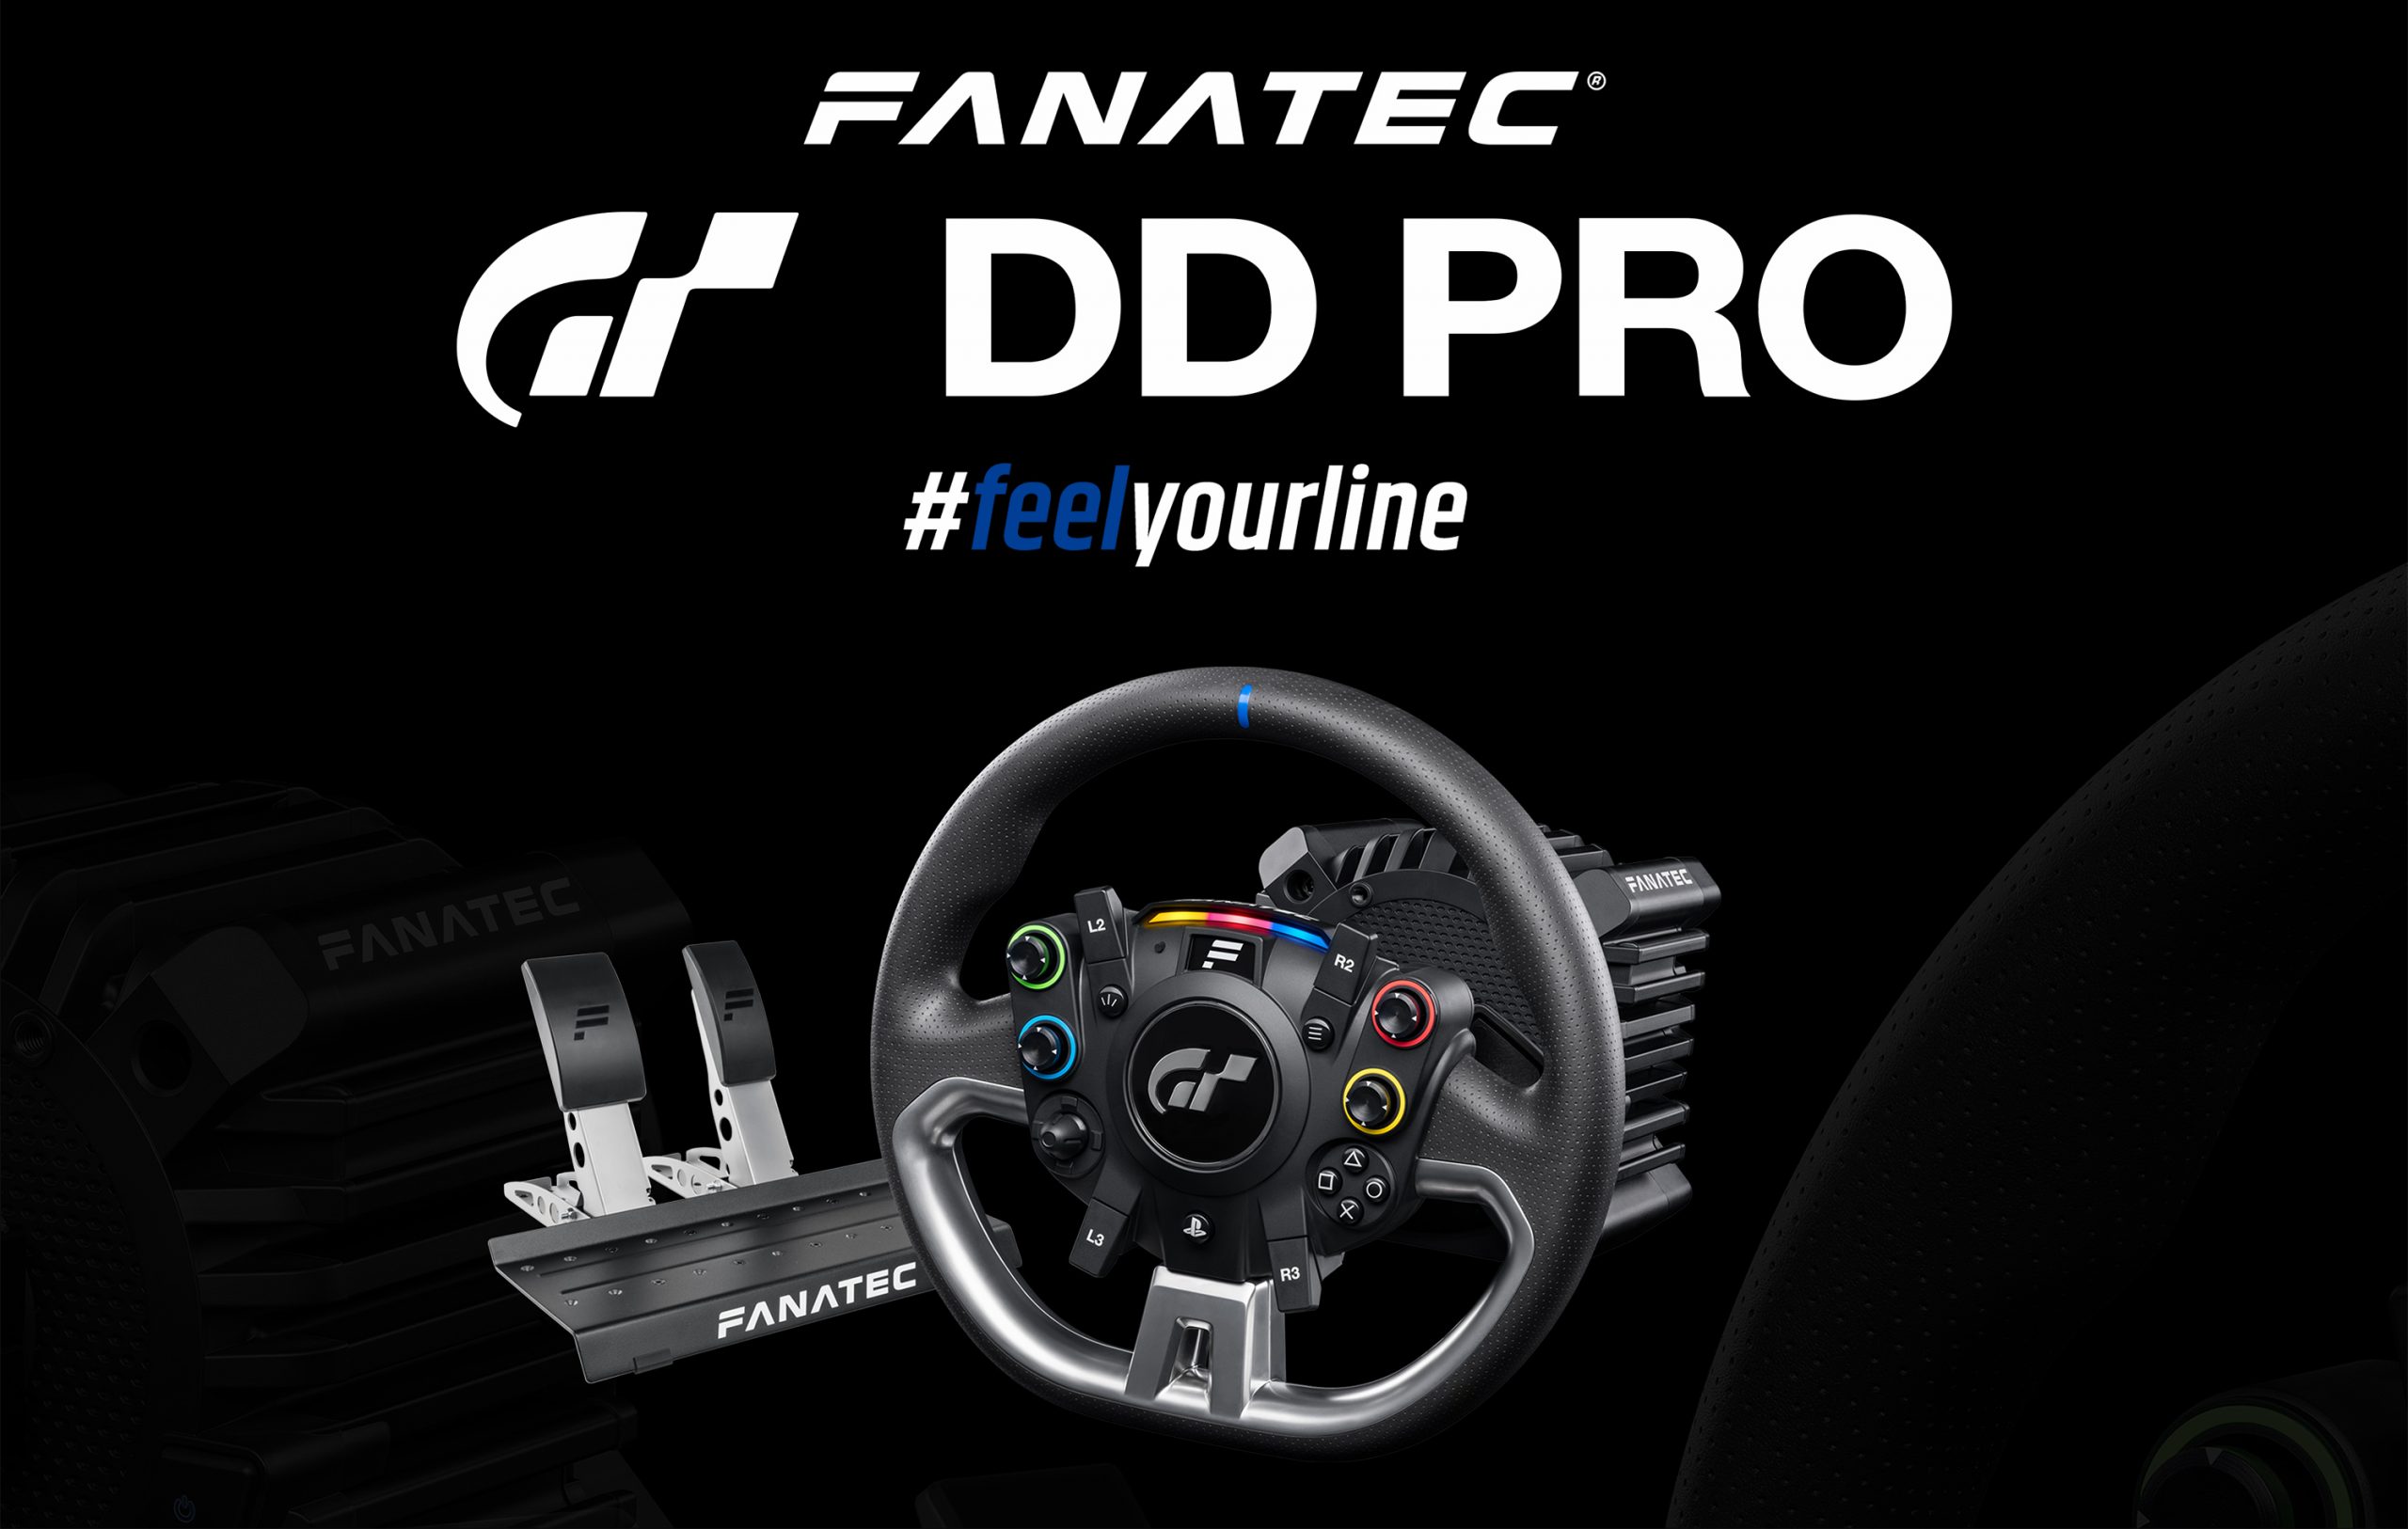 Le tout nouveau Fanatec Gran Turismo DD Pro arrive le 26 novembre en précommandes !